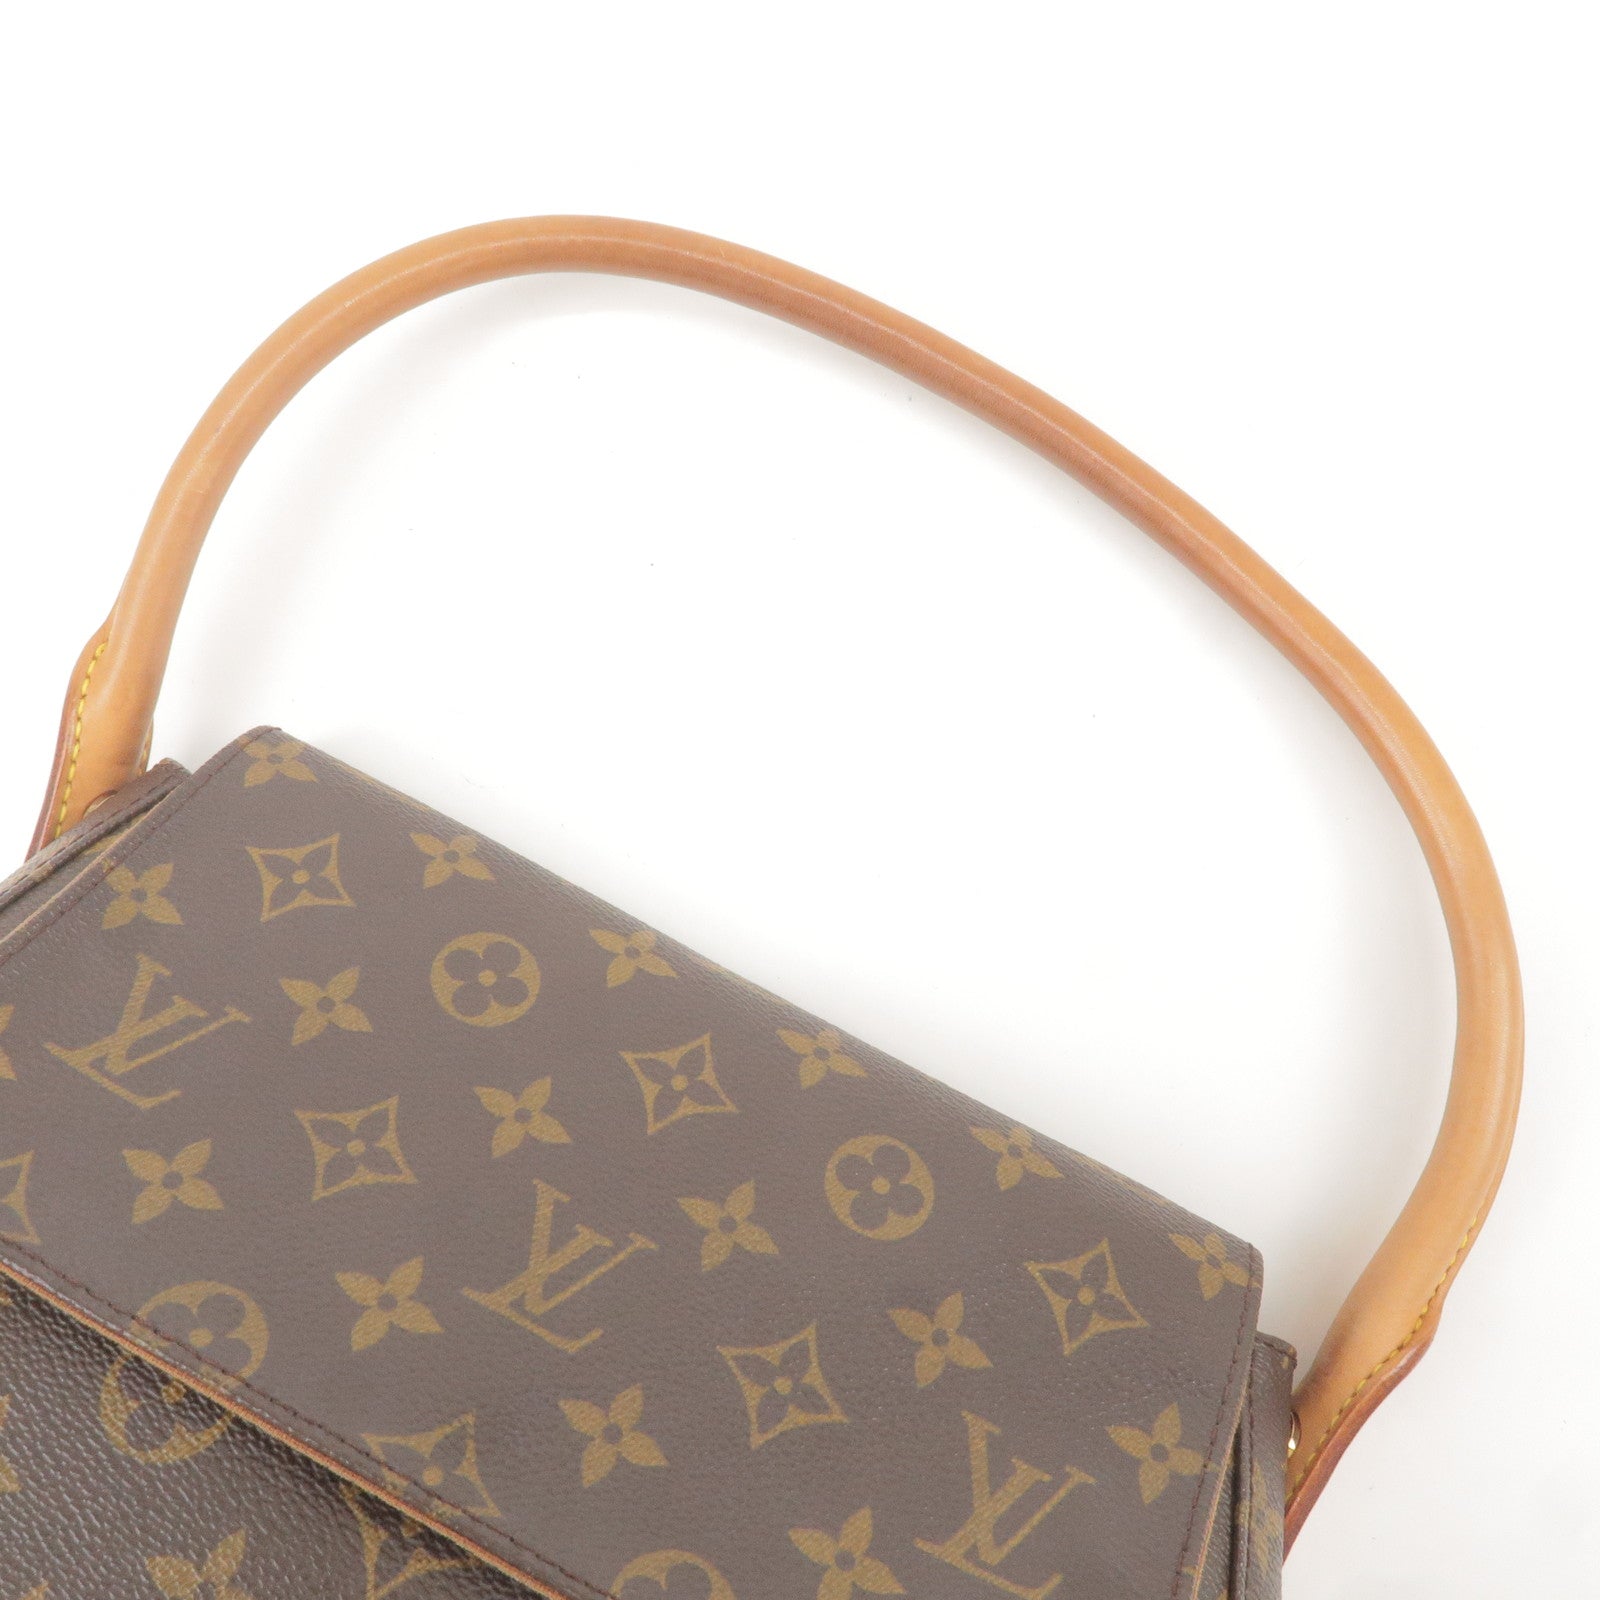 Pre-owned Louis Vuitton Vintage Monogram Mini Looping Bag